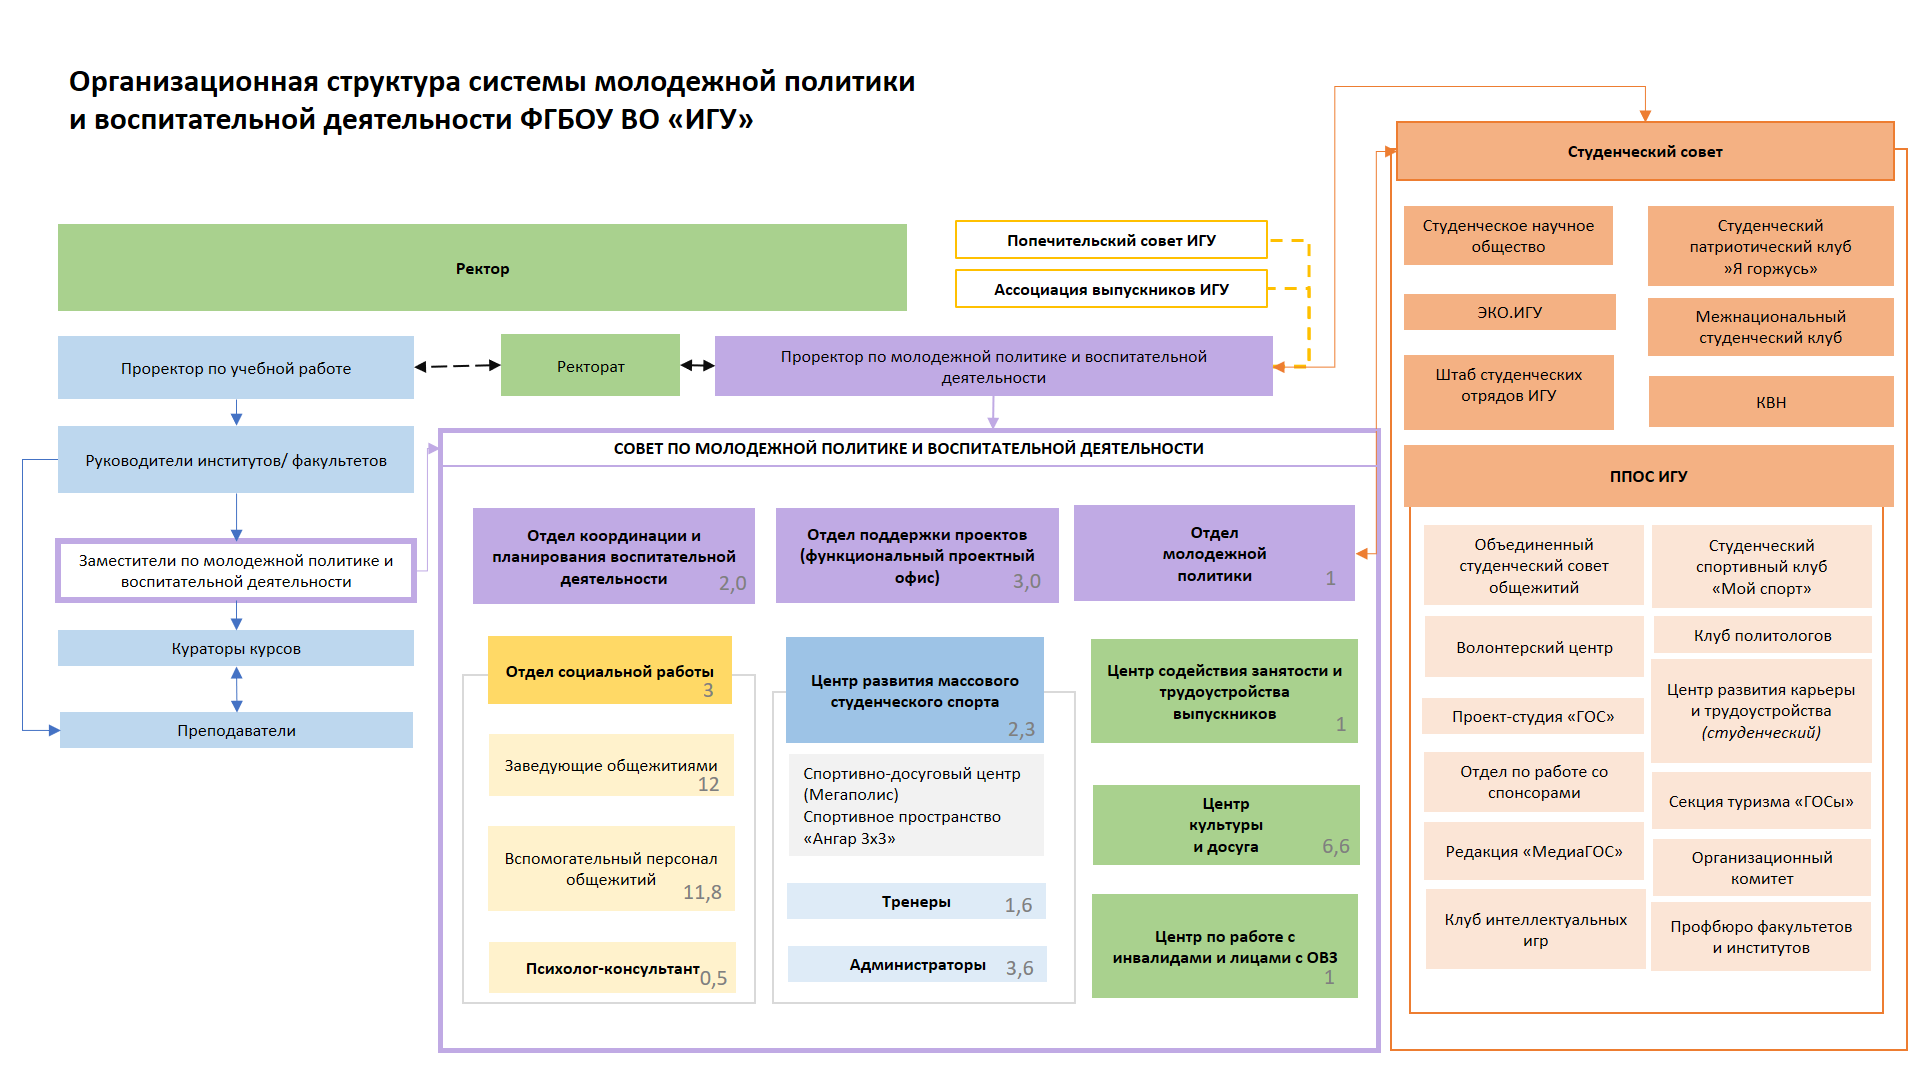 Организационная структура системы МПиВД